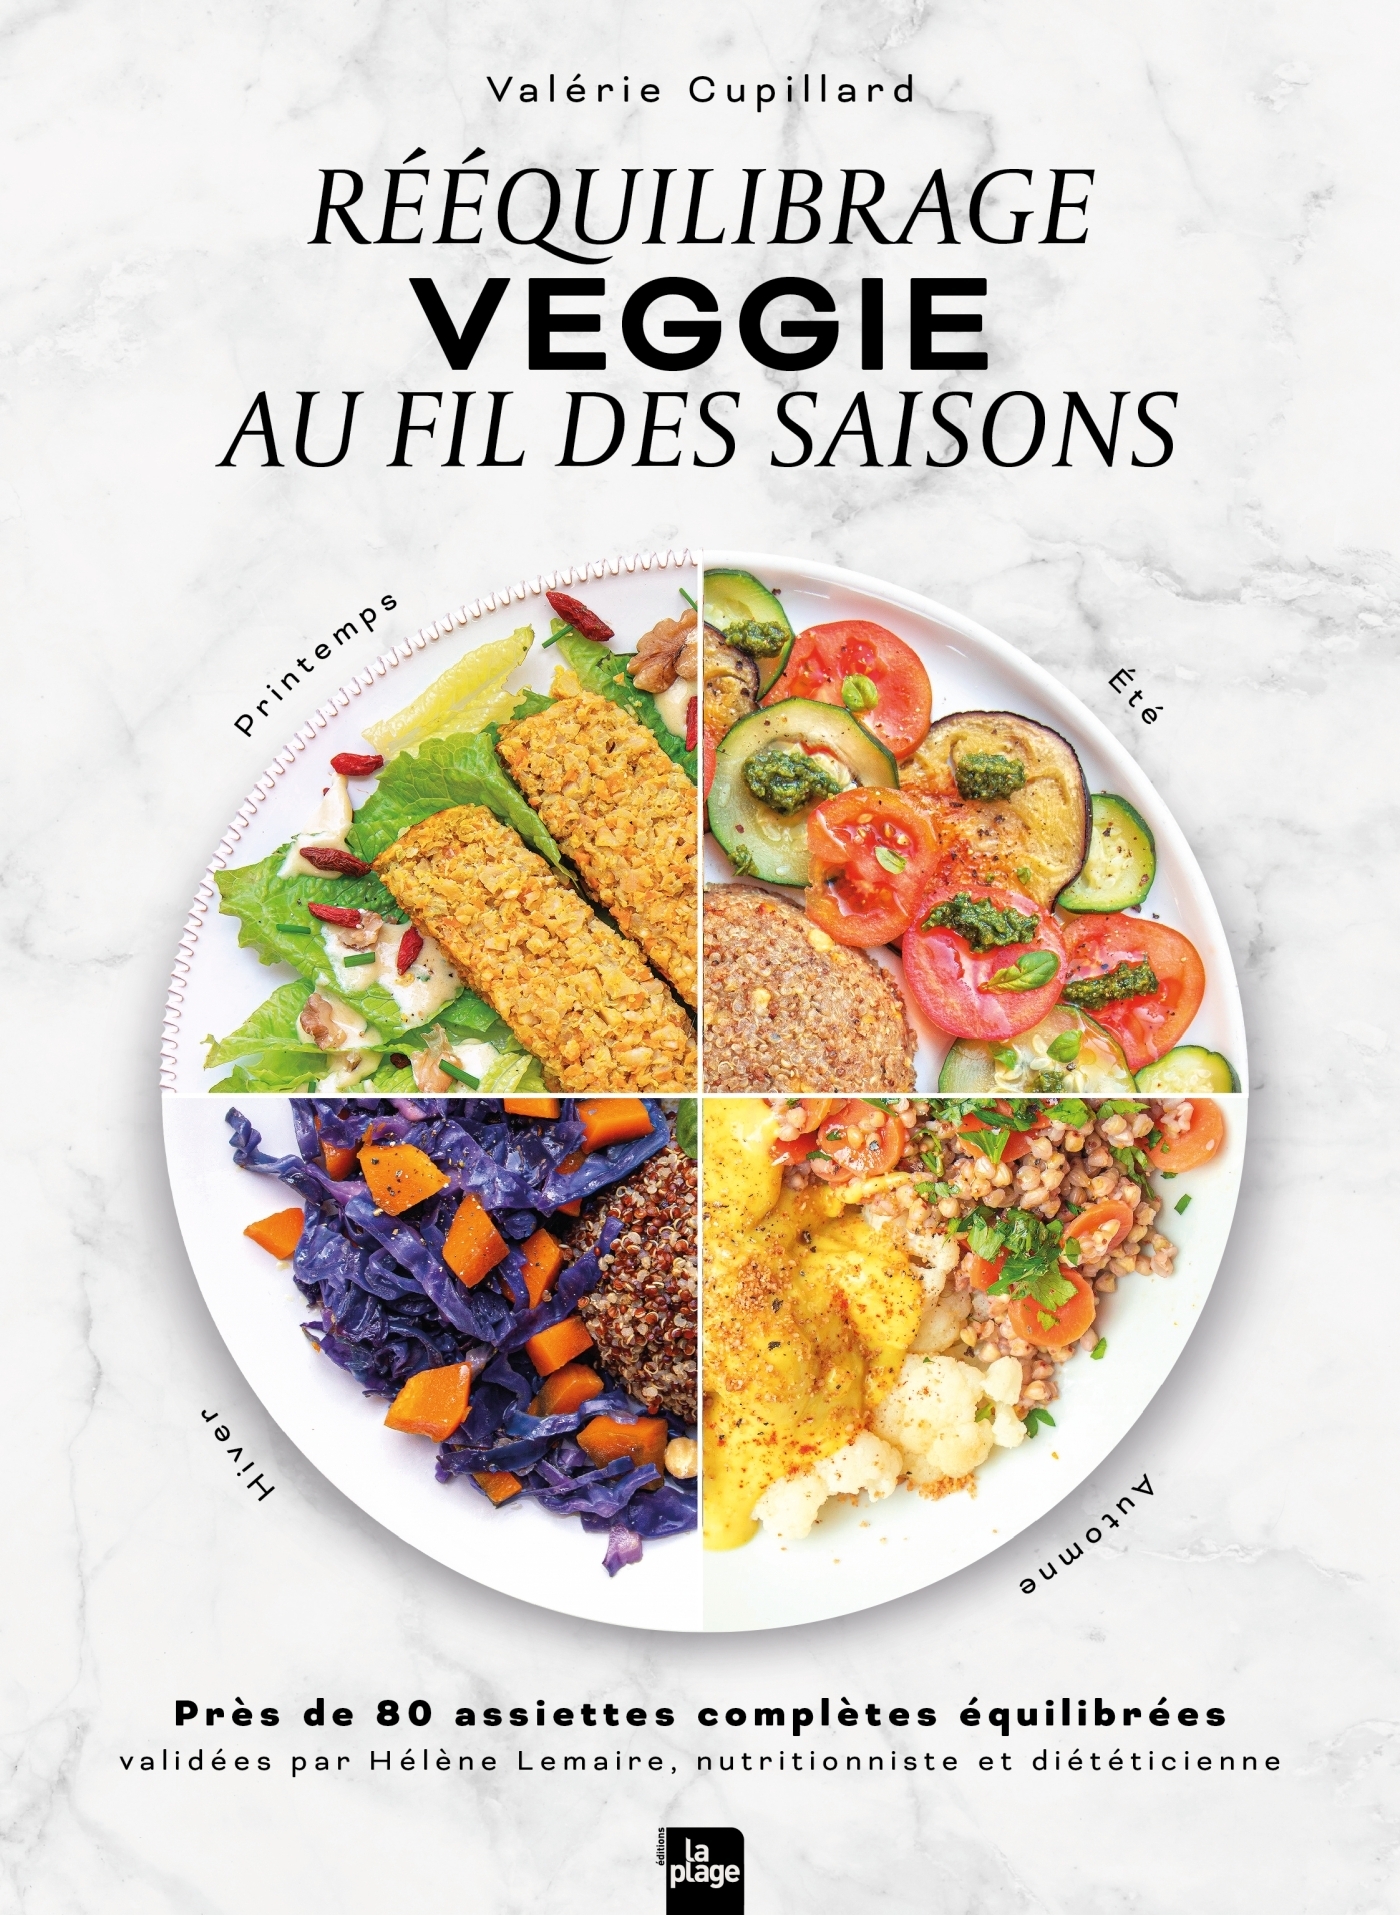 Recettes vegan - recettes végétales - recette végétalienne